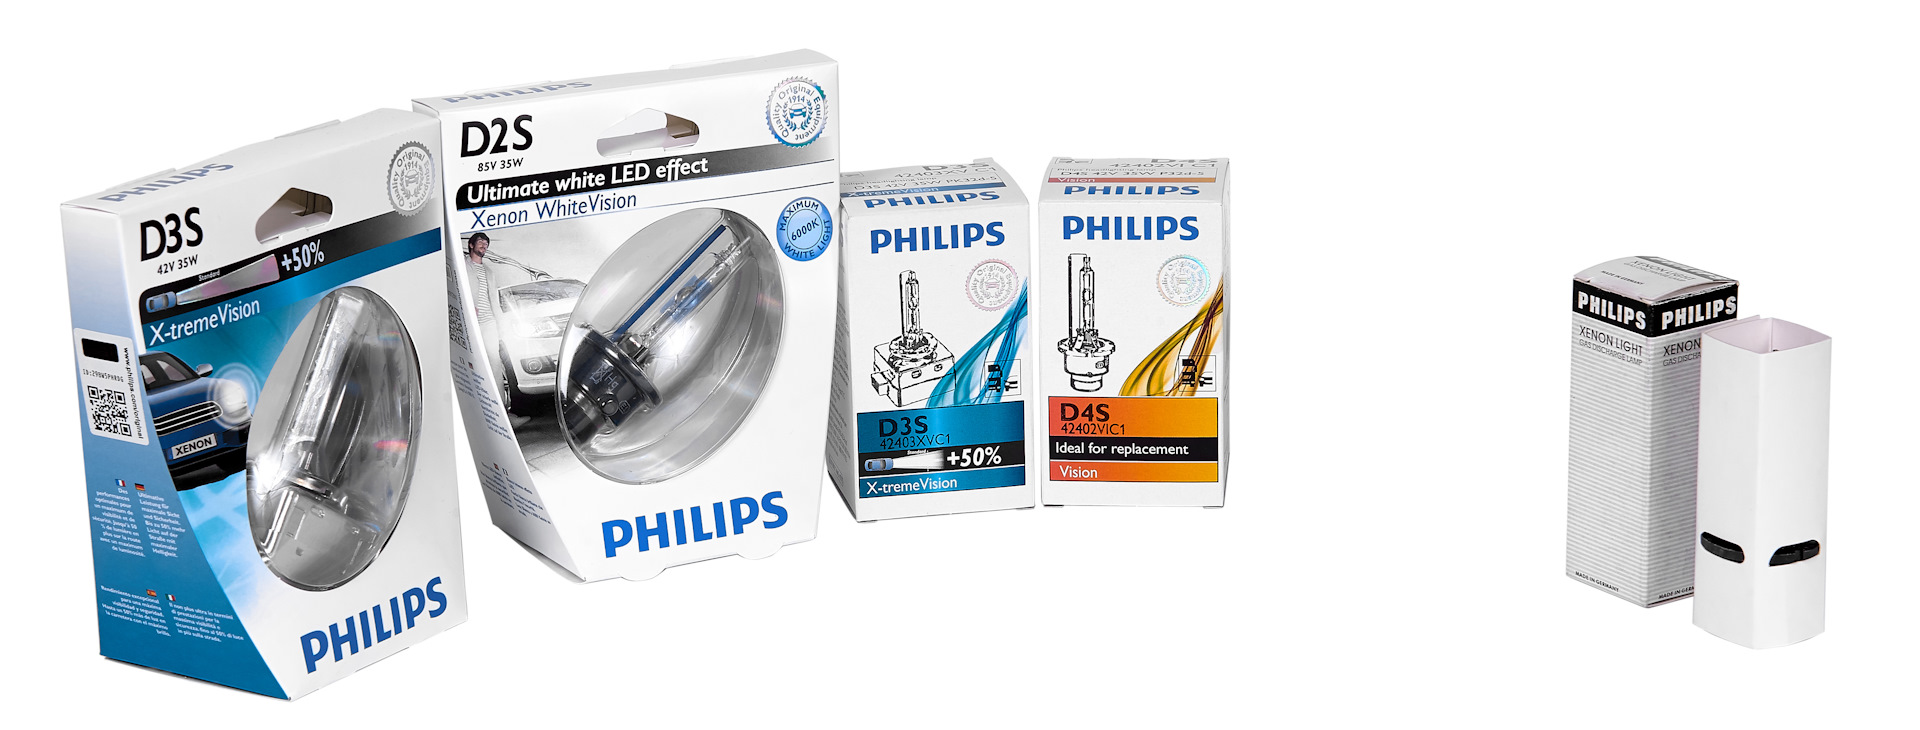 Philips лампы автомобильные 42402wxx2. Маркировка ксеноновых ламп Филипс. Филипс оригинал